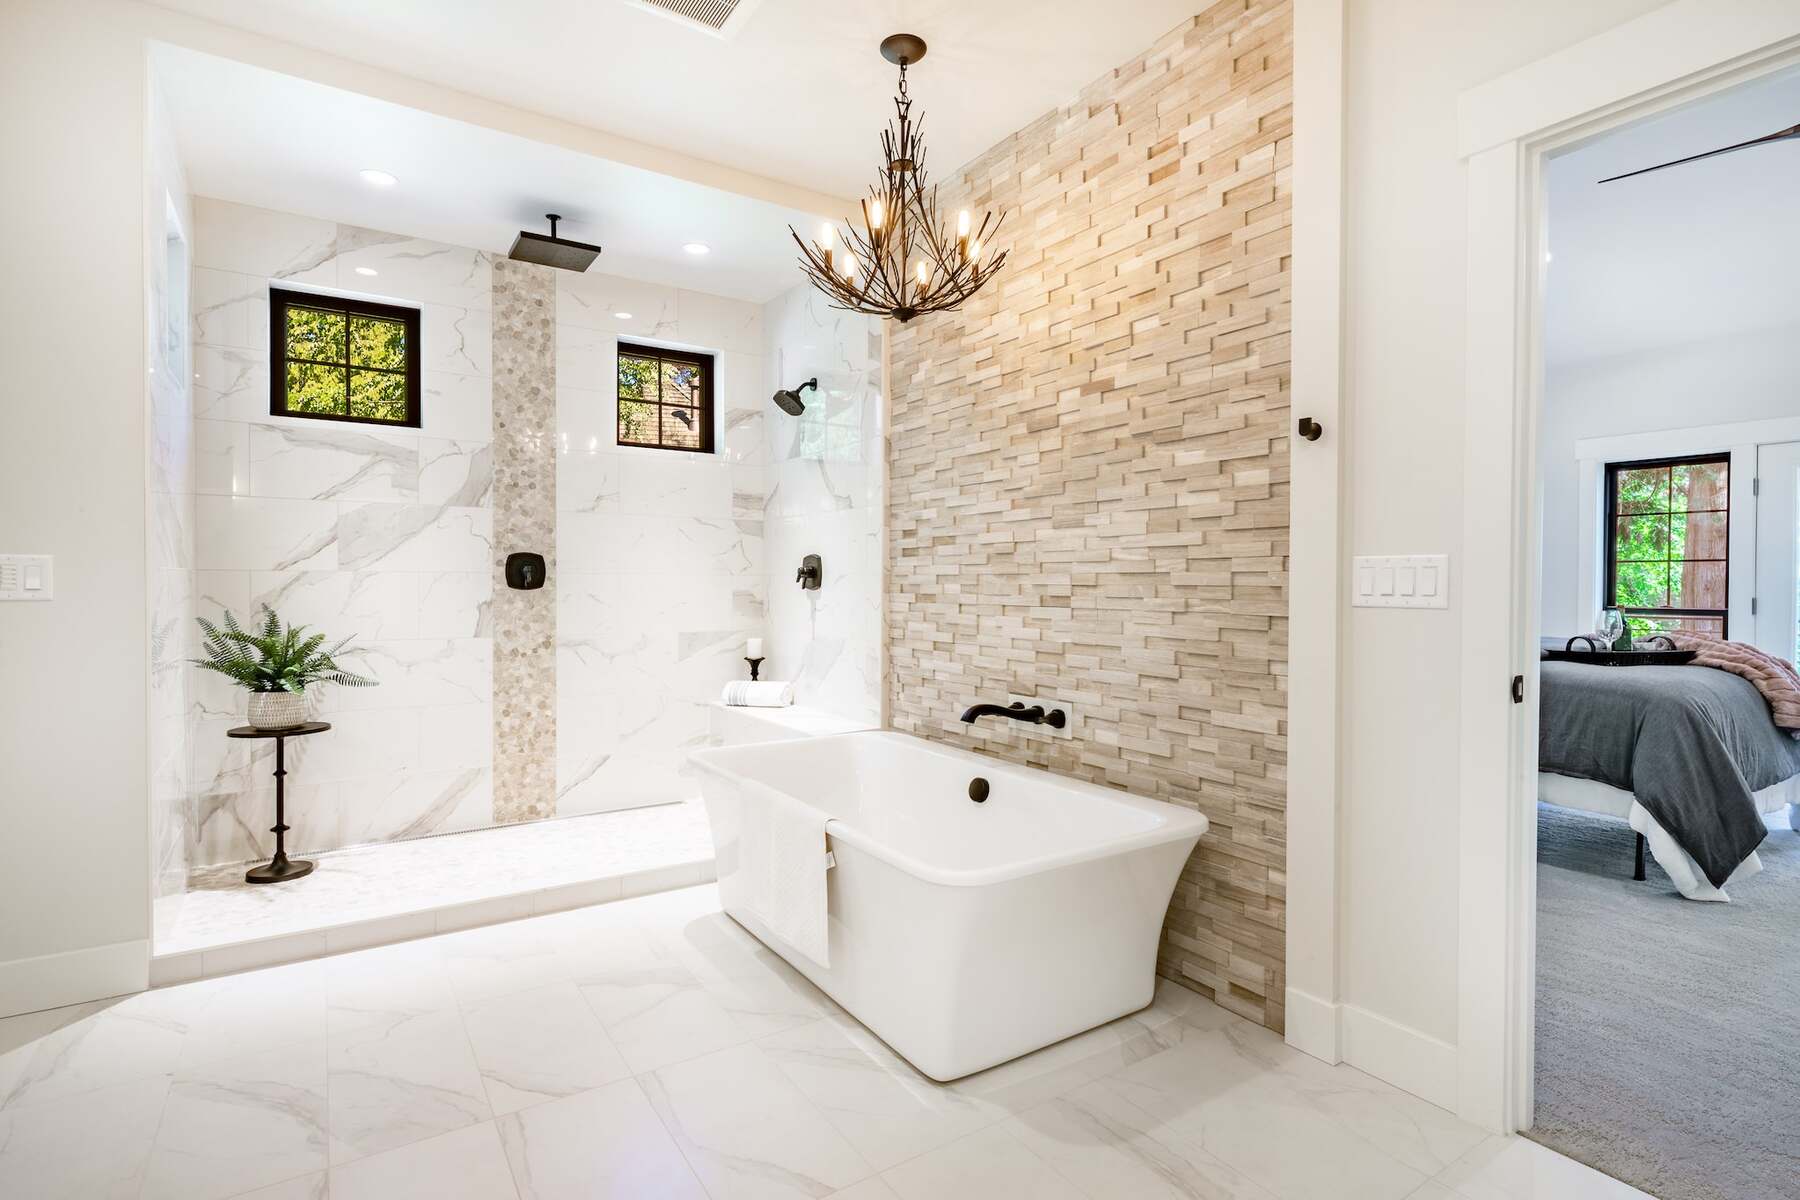 Bathtub placed against a tiled wall on an expansive bathroom